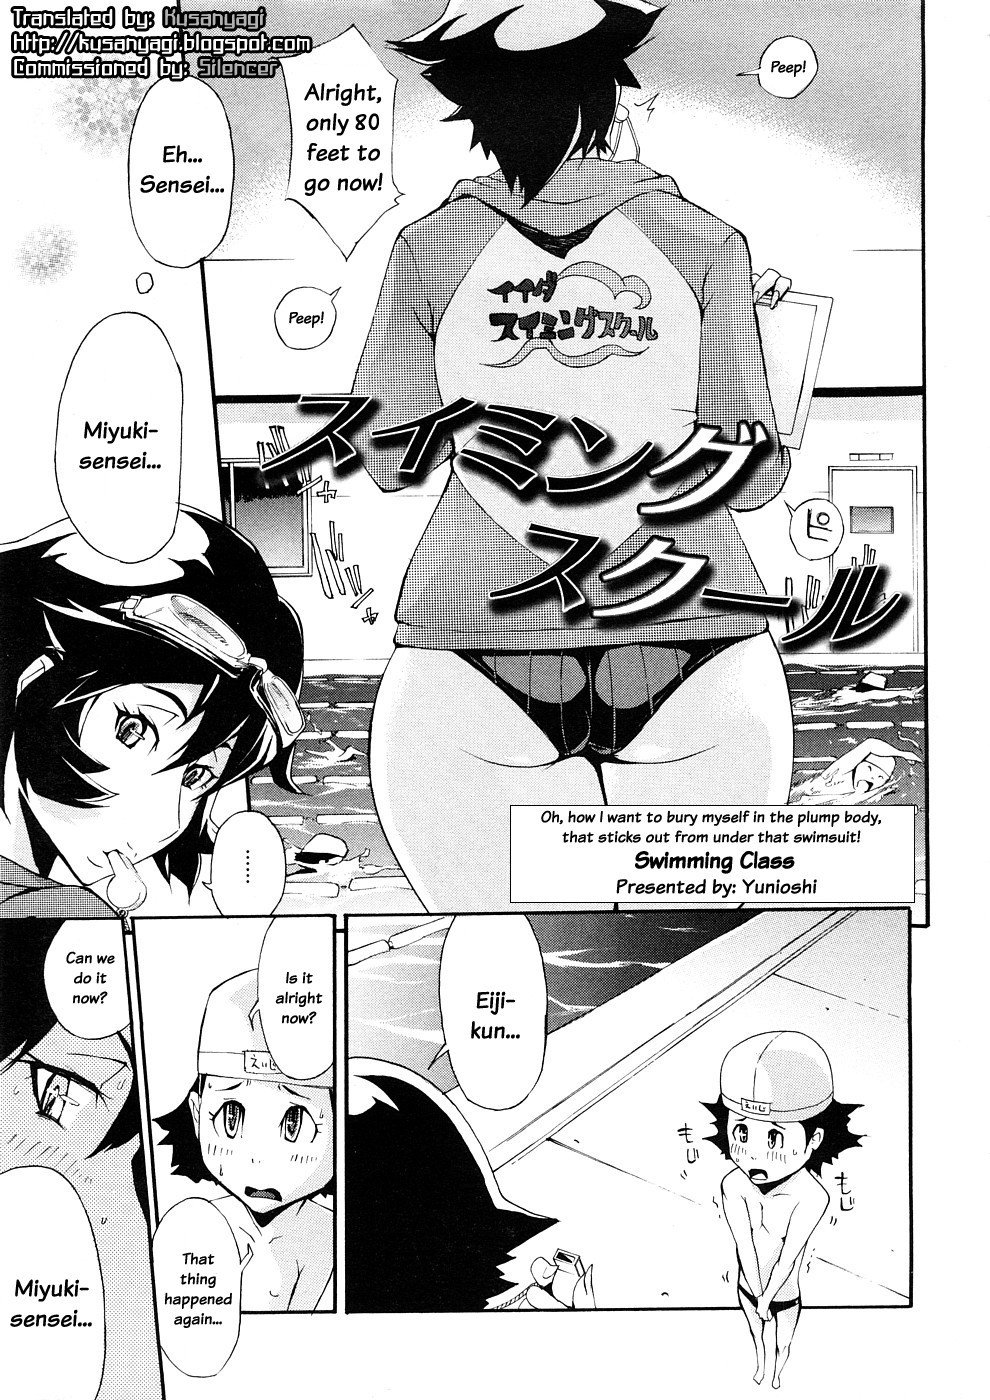 Swimming Class hentai manga